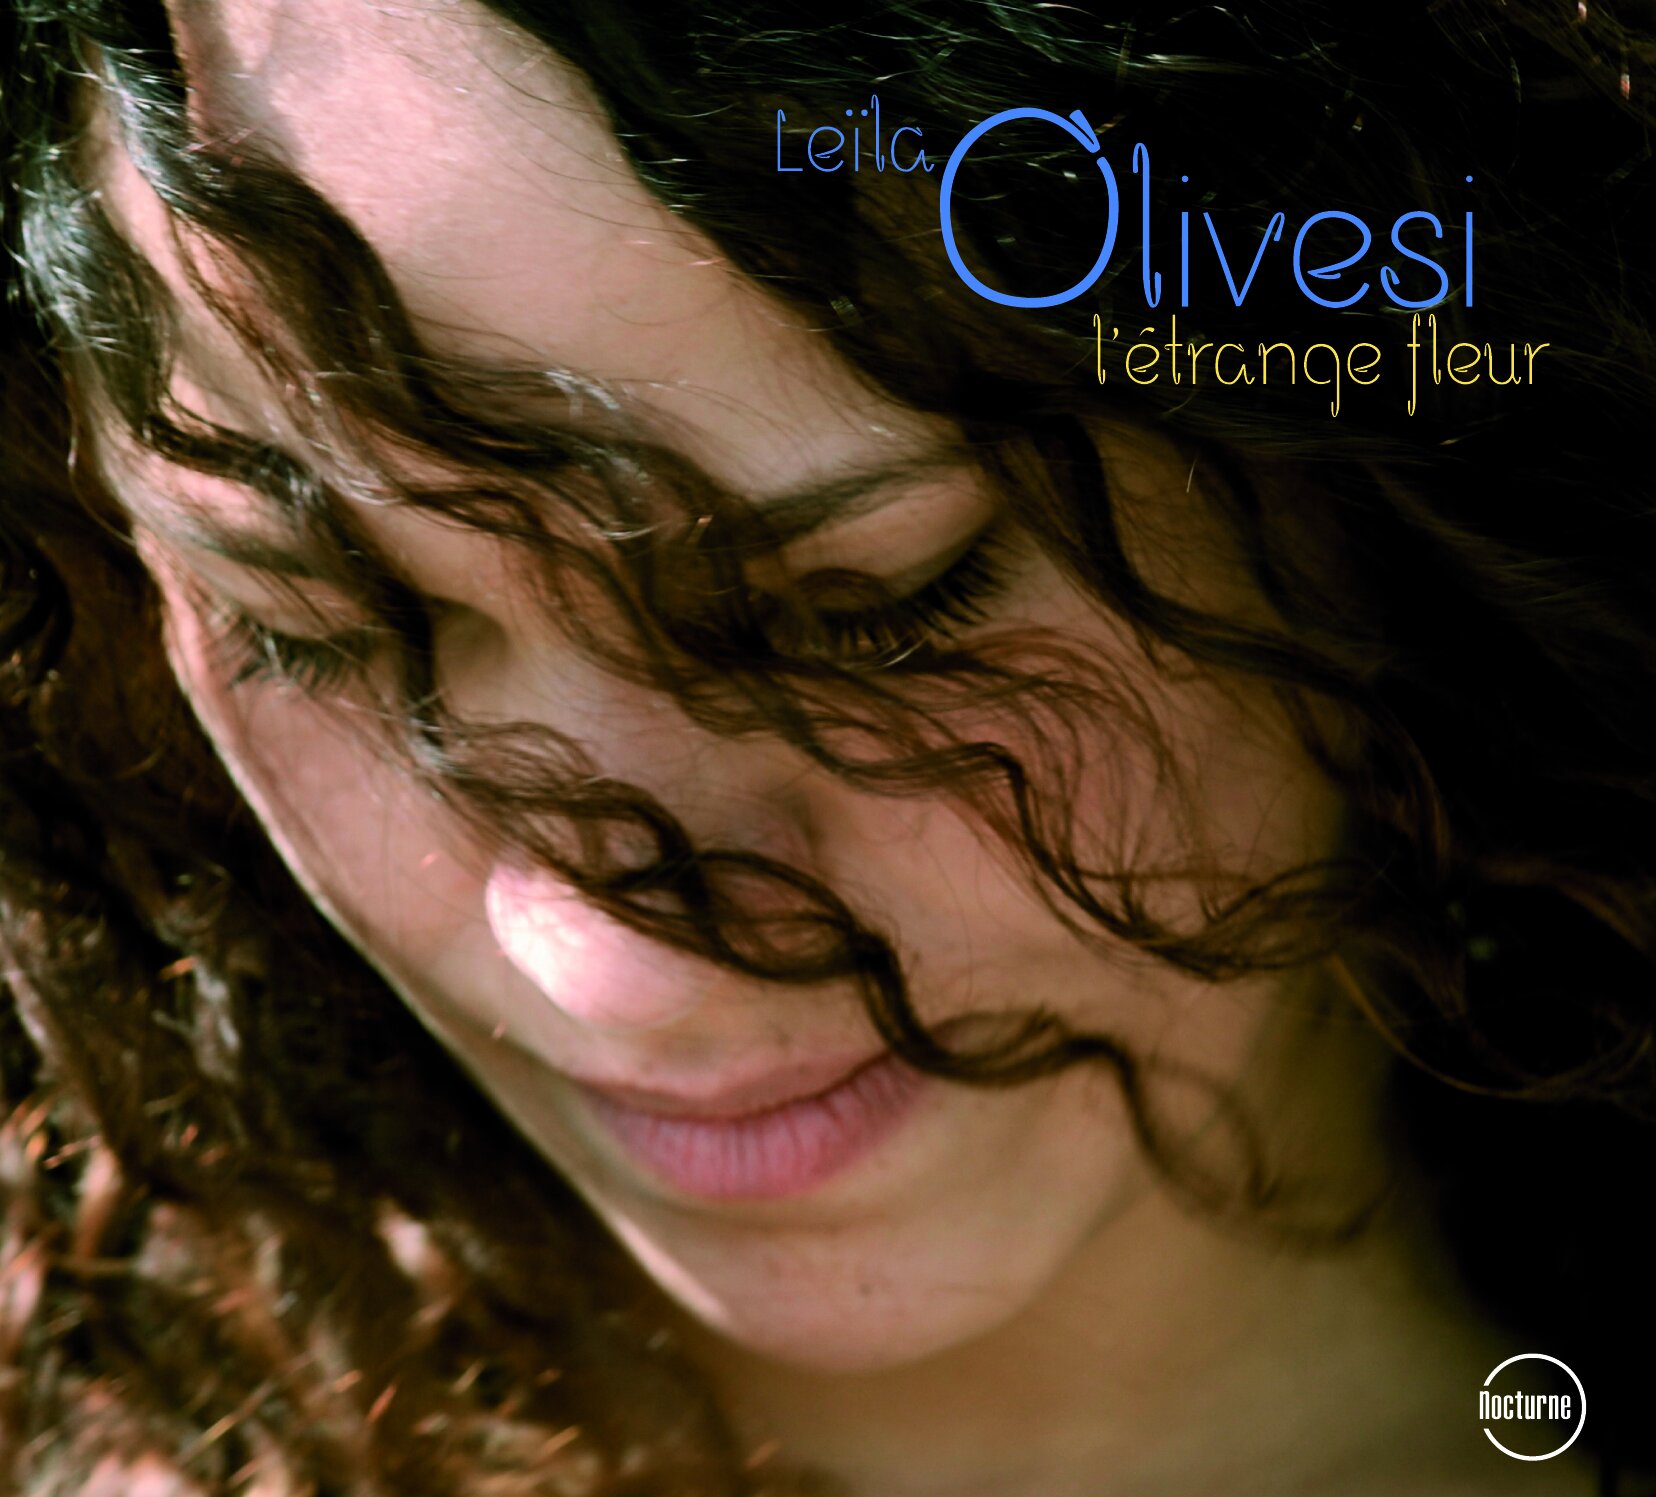 cd cover leila olivesi.jpg